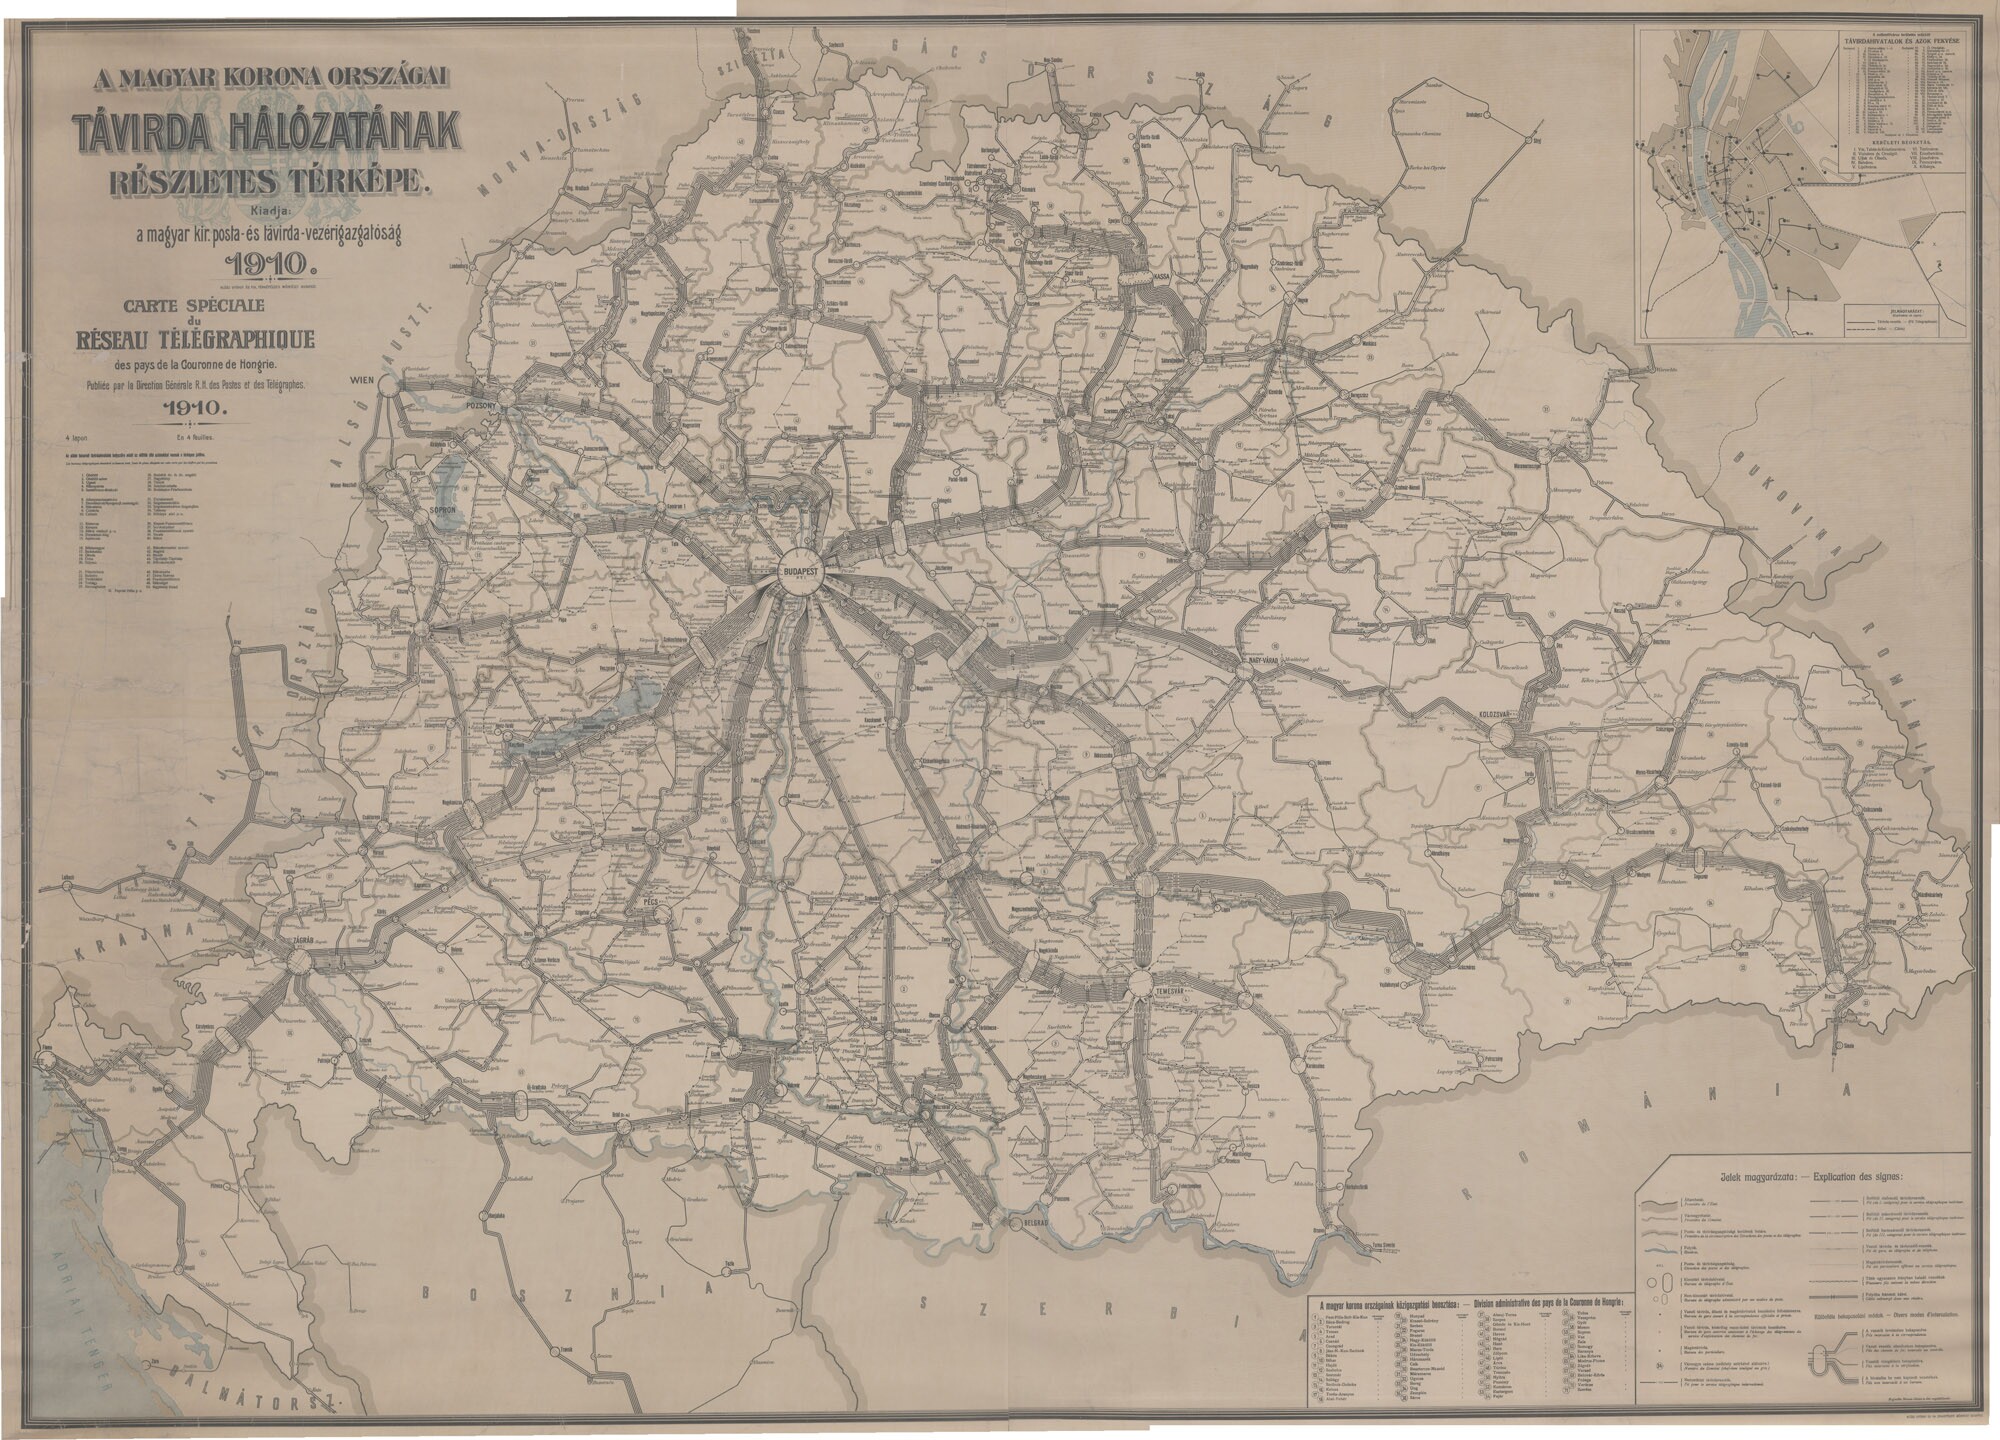 A Magyar Korona országai távírdahálózatának részletes térképe, 1910 (Postamúzeum CC BY-NC-SA)